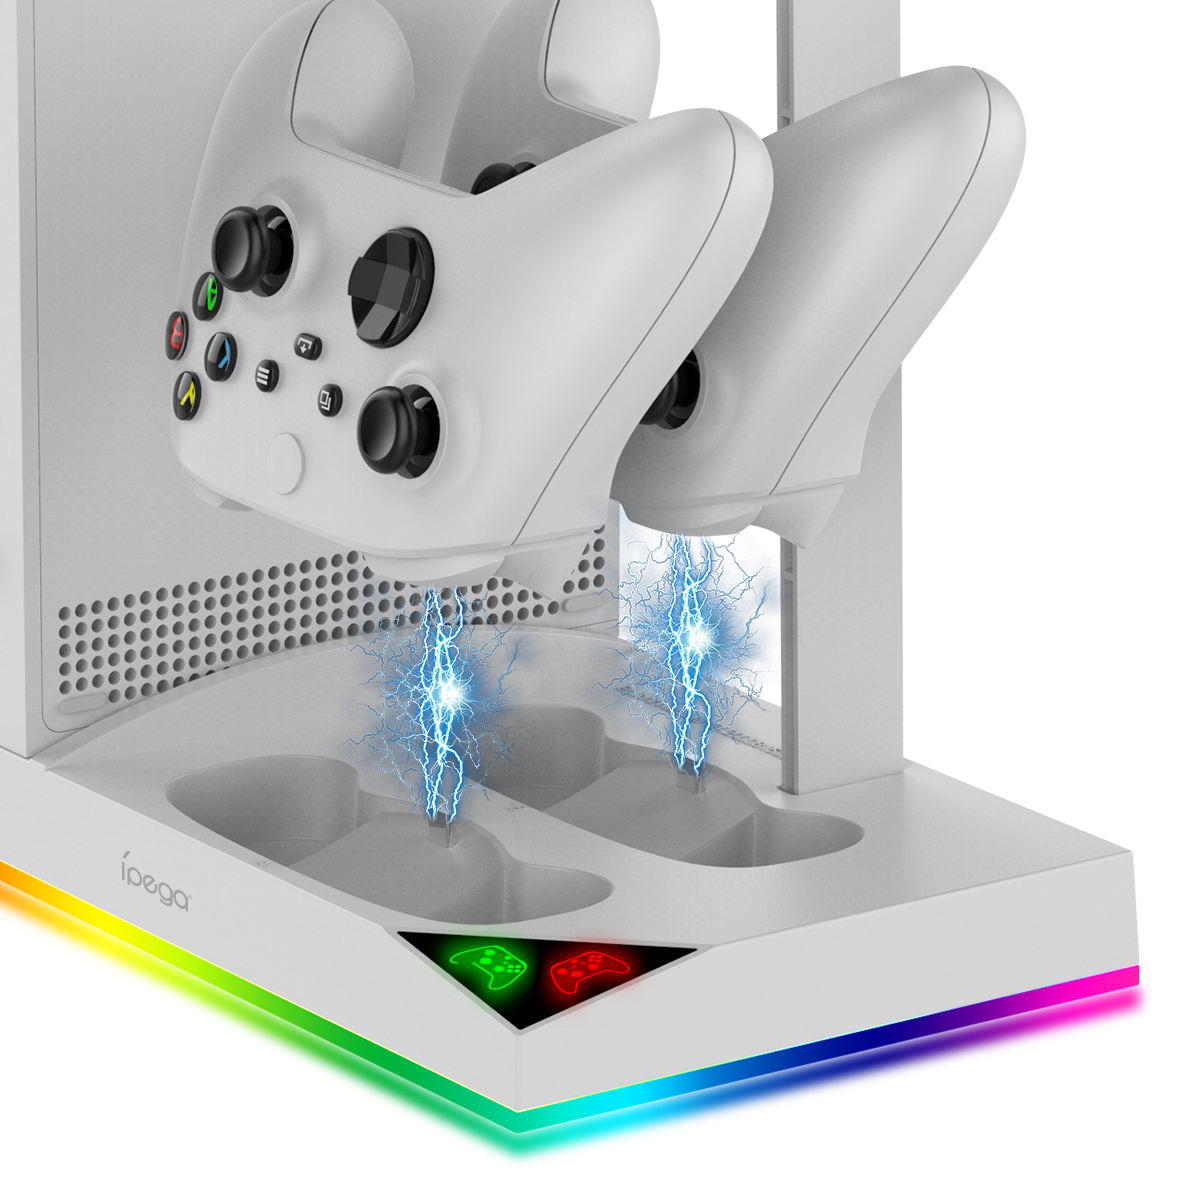 Многофункциональный стенд iPega для Xbox S серии +2 акб 1400 мА белый RGB подсветка PG-XBS013SA